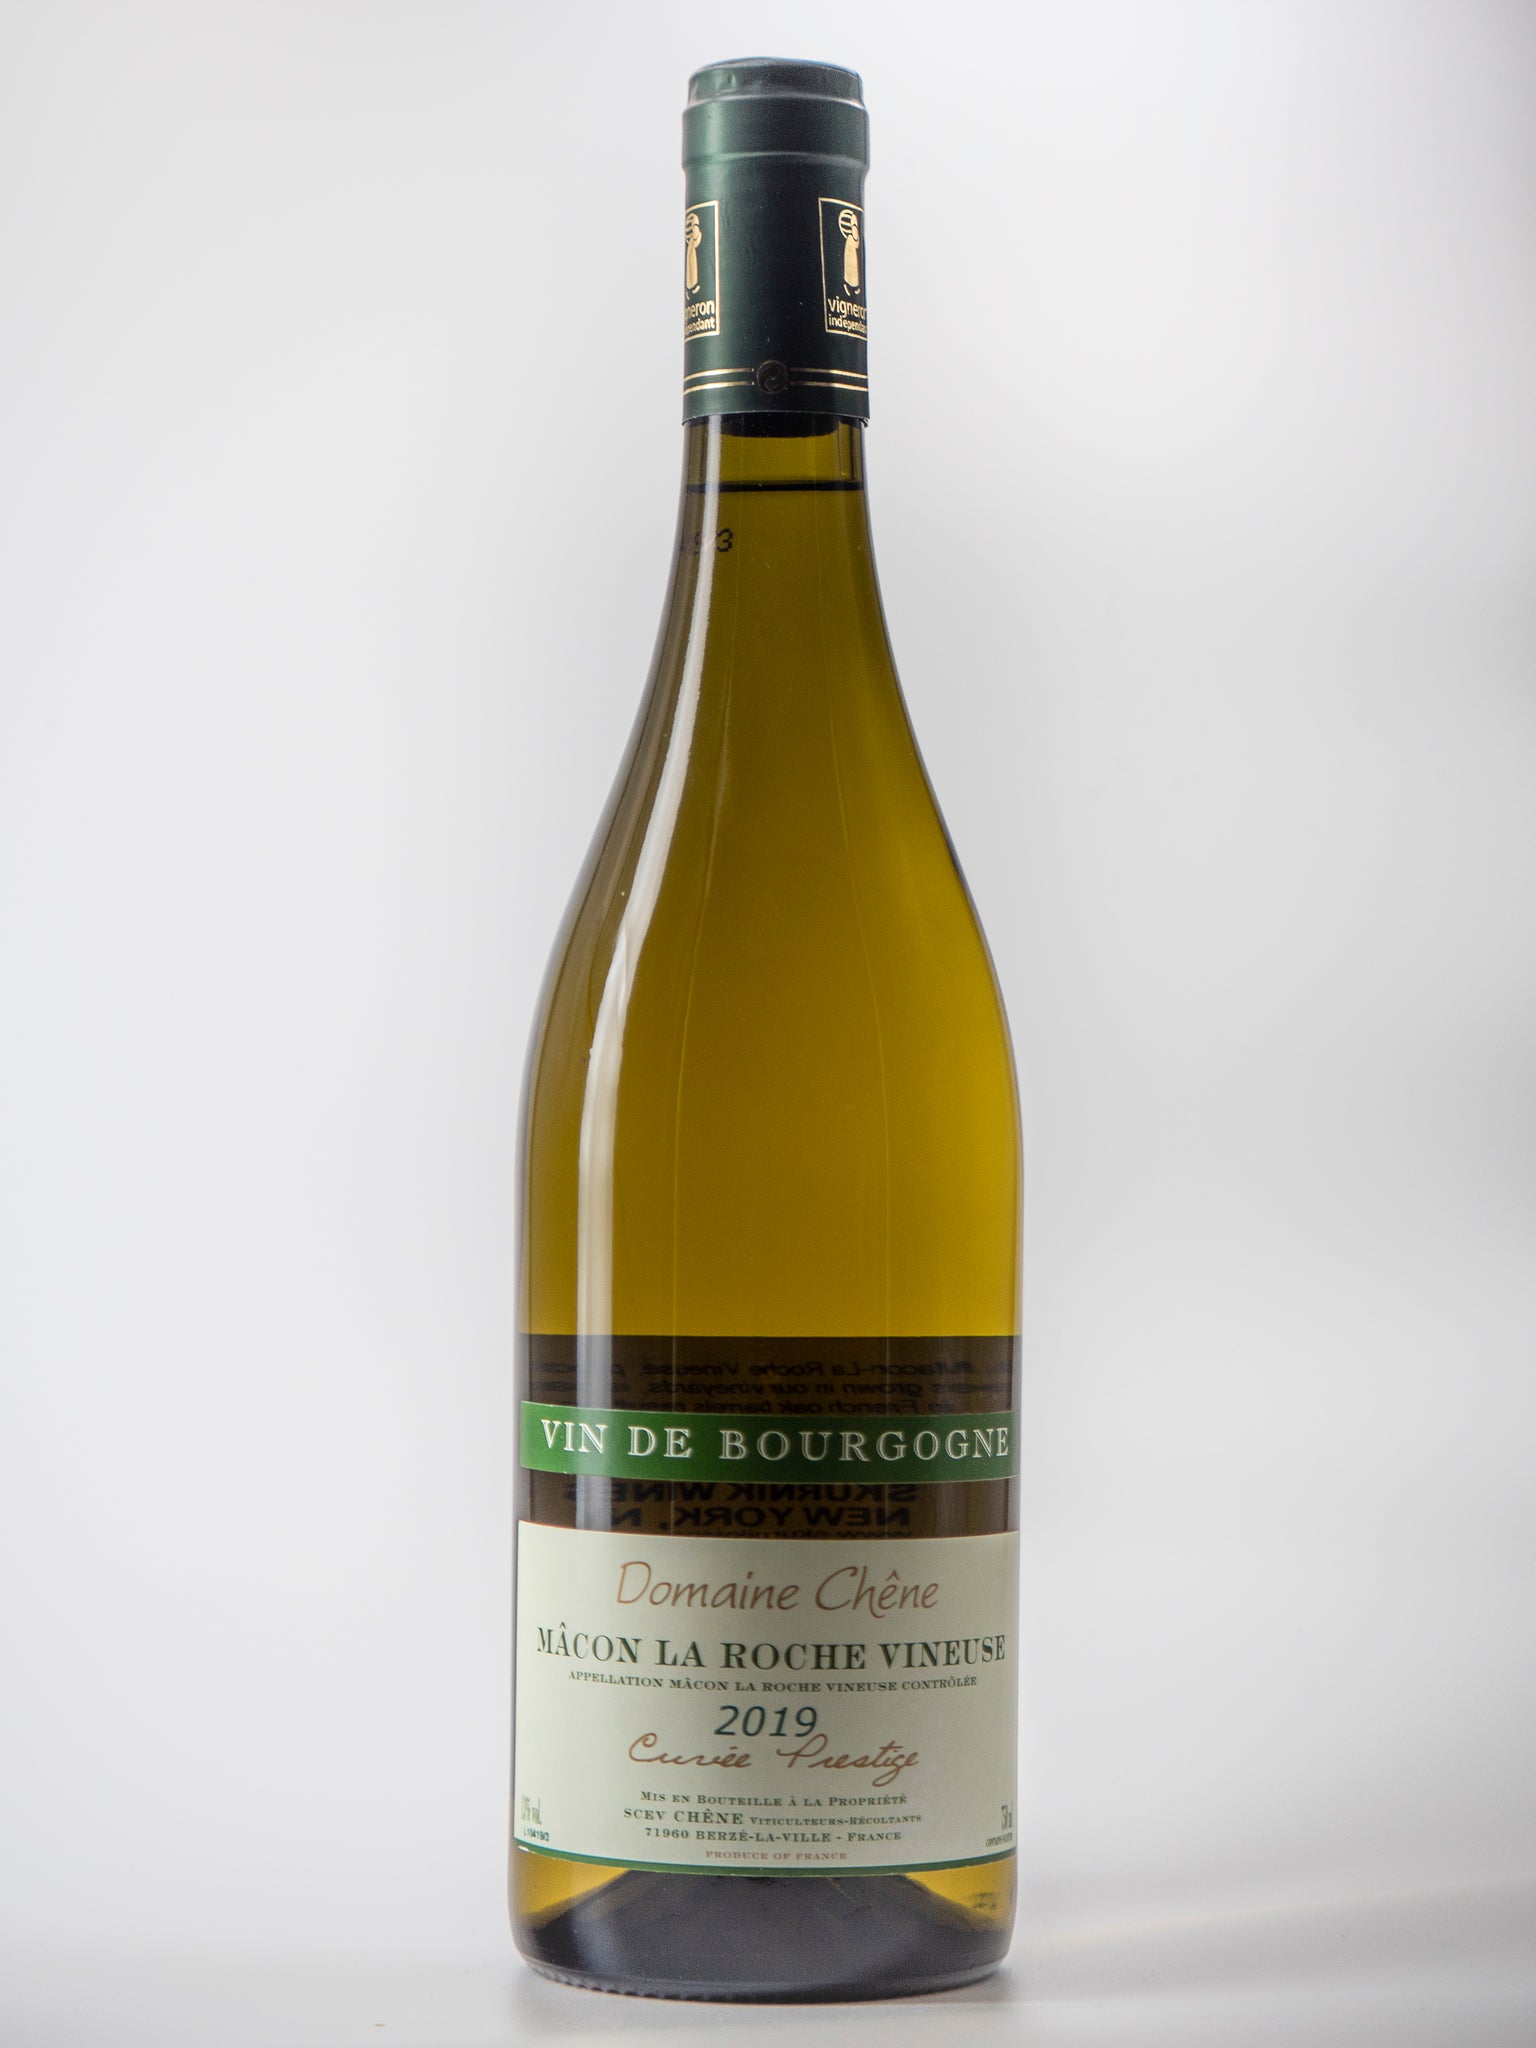 Chardonnay, Cuvee Prestige, Macon la Roche Vineuse, Domaine Chene Vin de Bourgogne